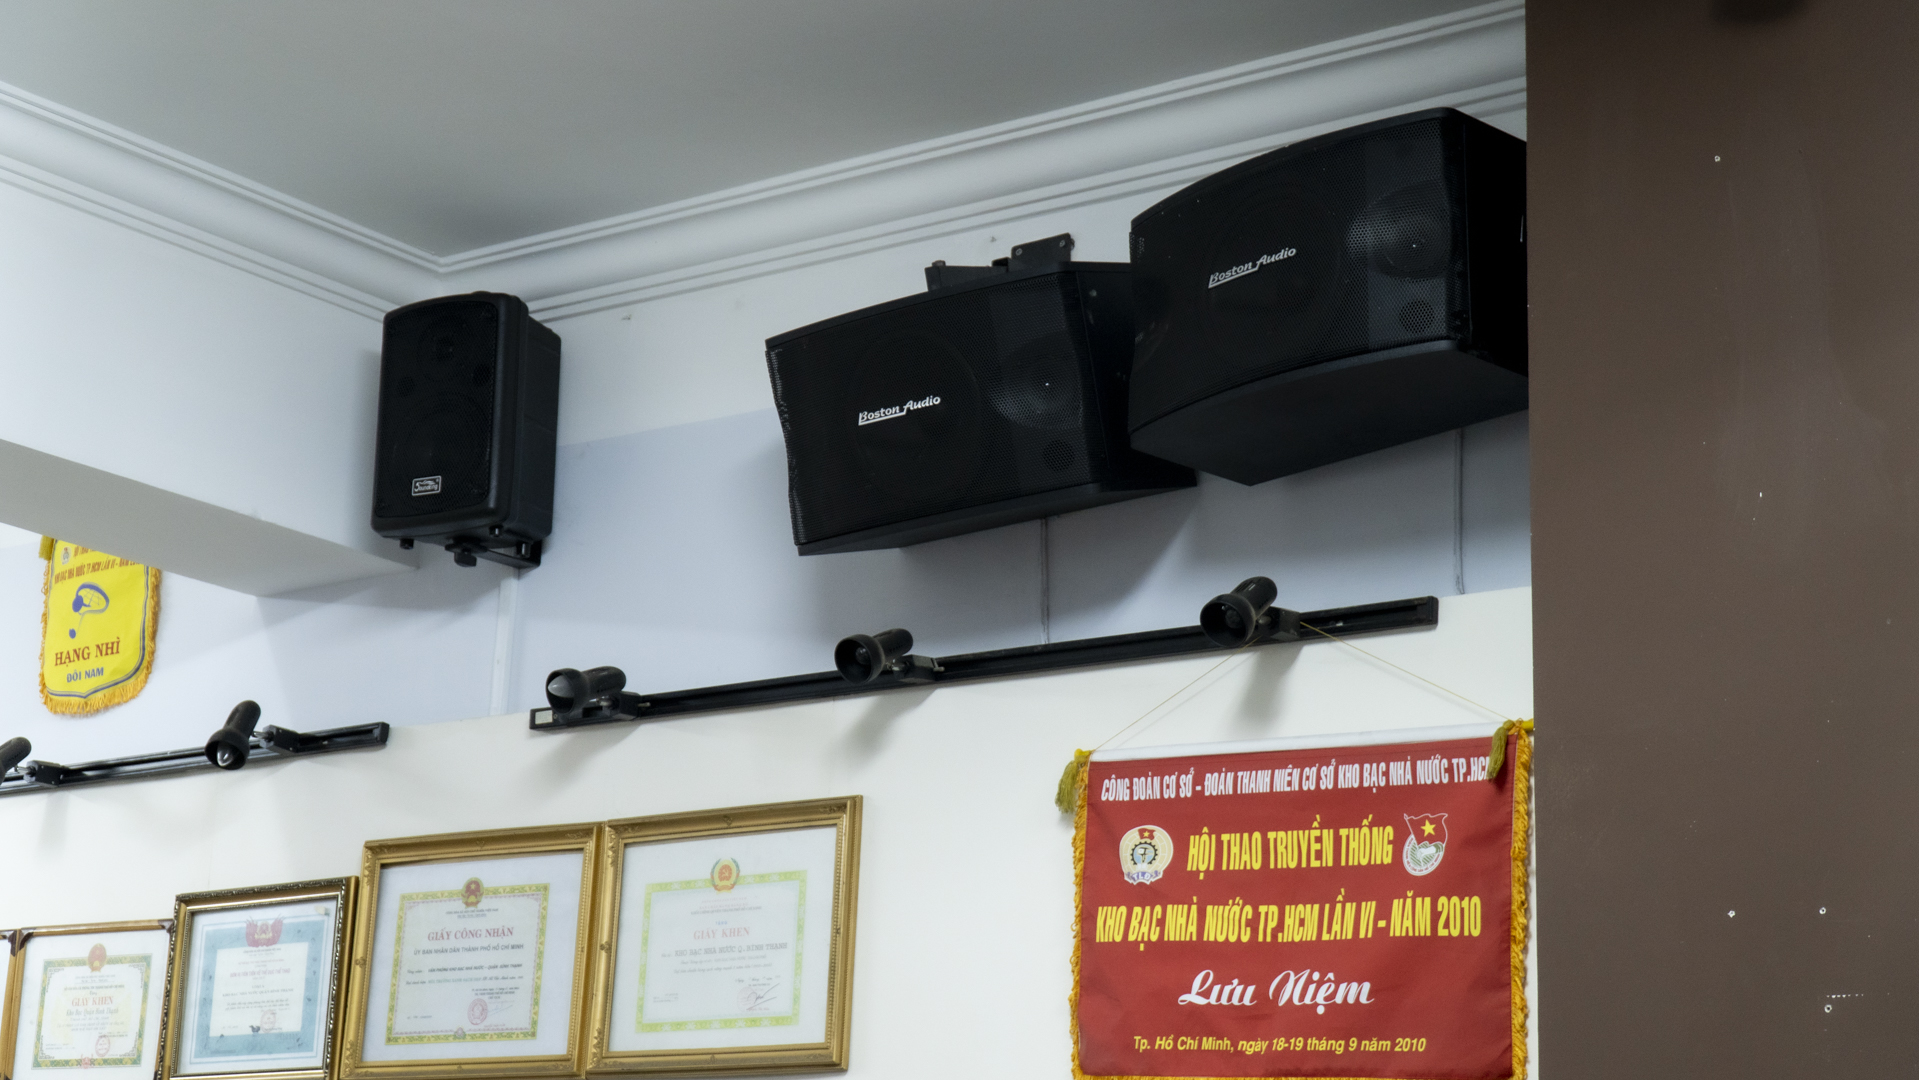 Hệ thống âm thanh loa phòng họp hội trường: Kho bạc Nhà nước Quận Bình Thạnh